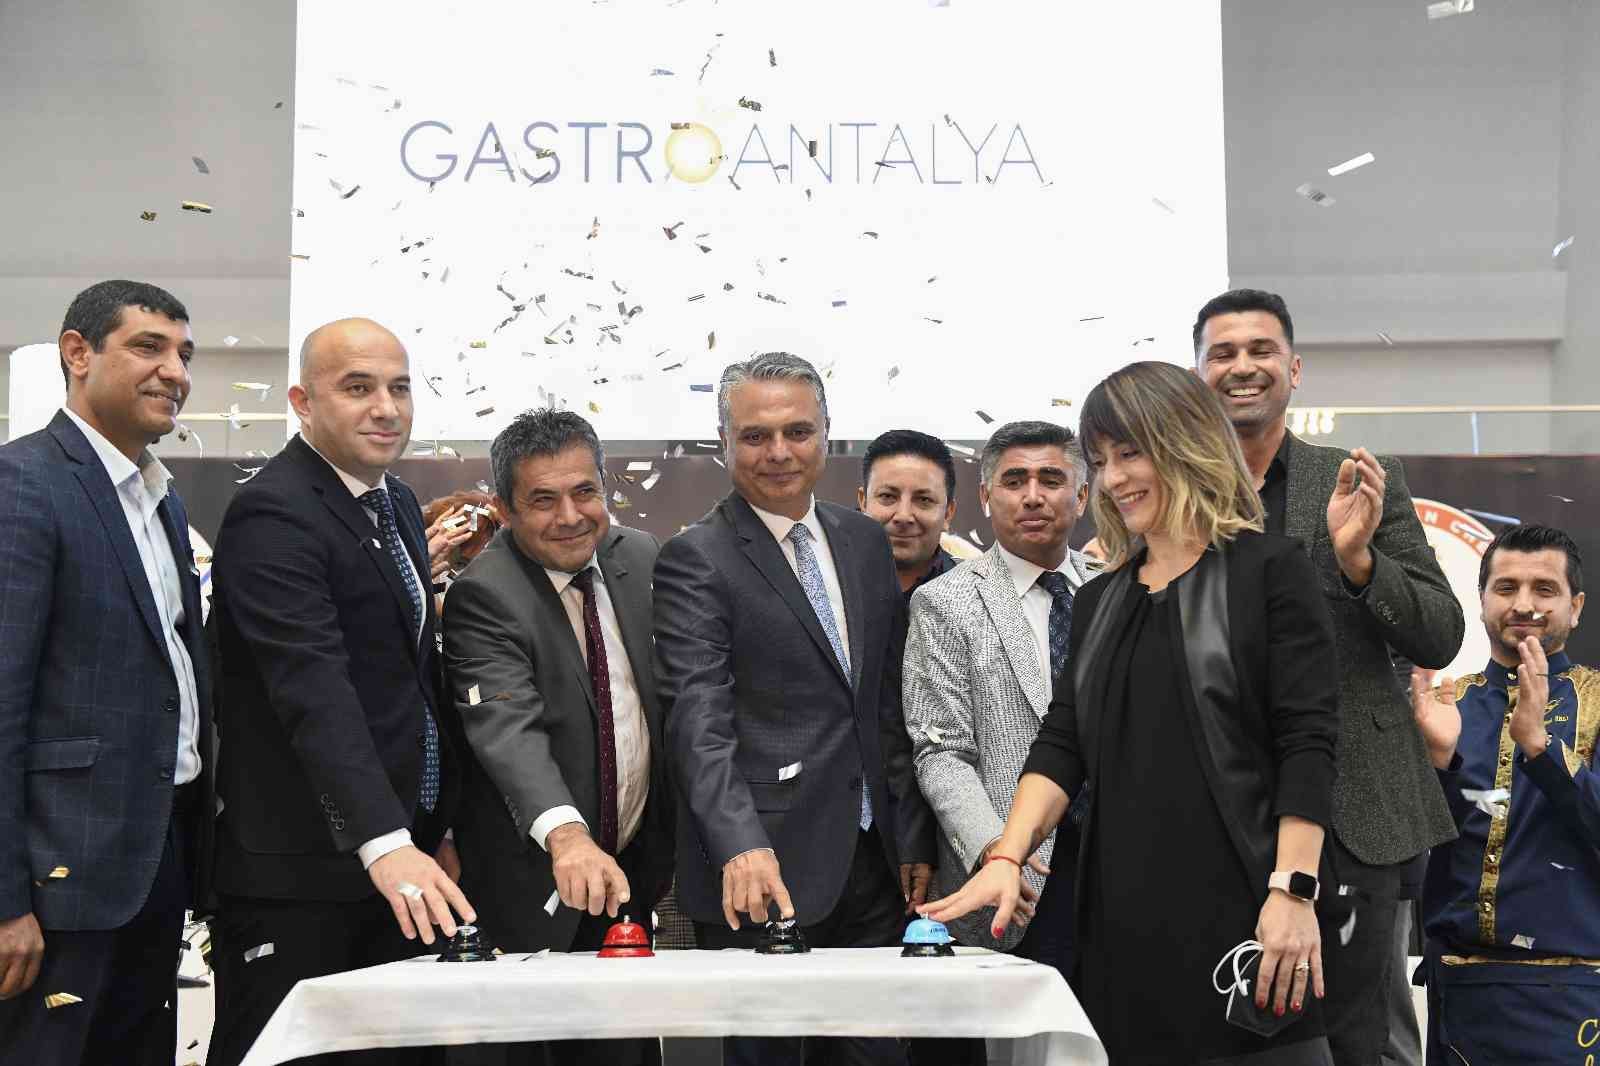 Başkan Uysal: “Gastronomi Antalya’nın geleceğinde yer almalı” #antalya